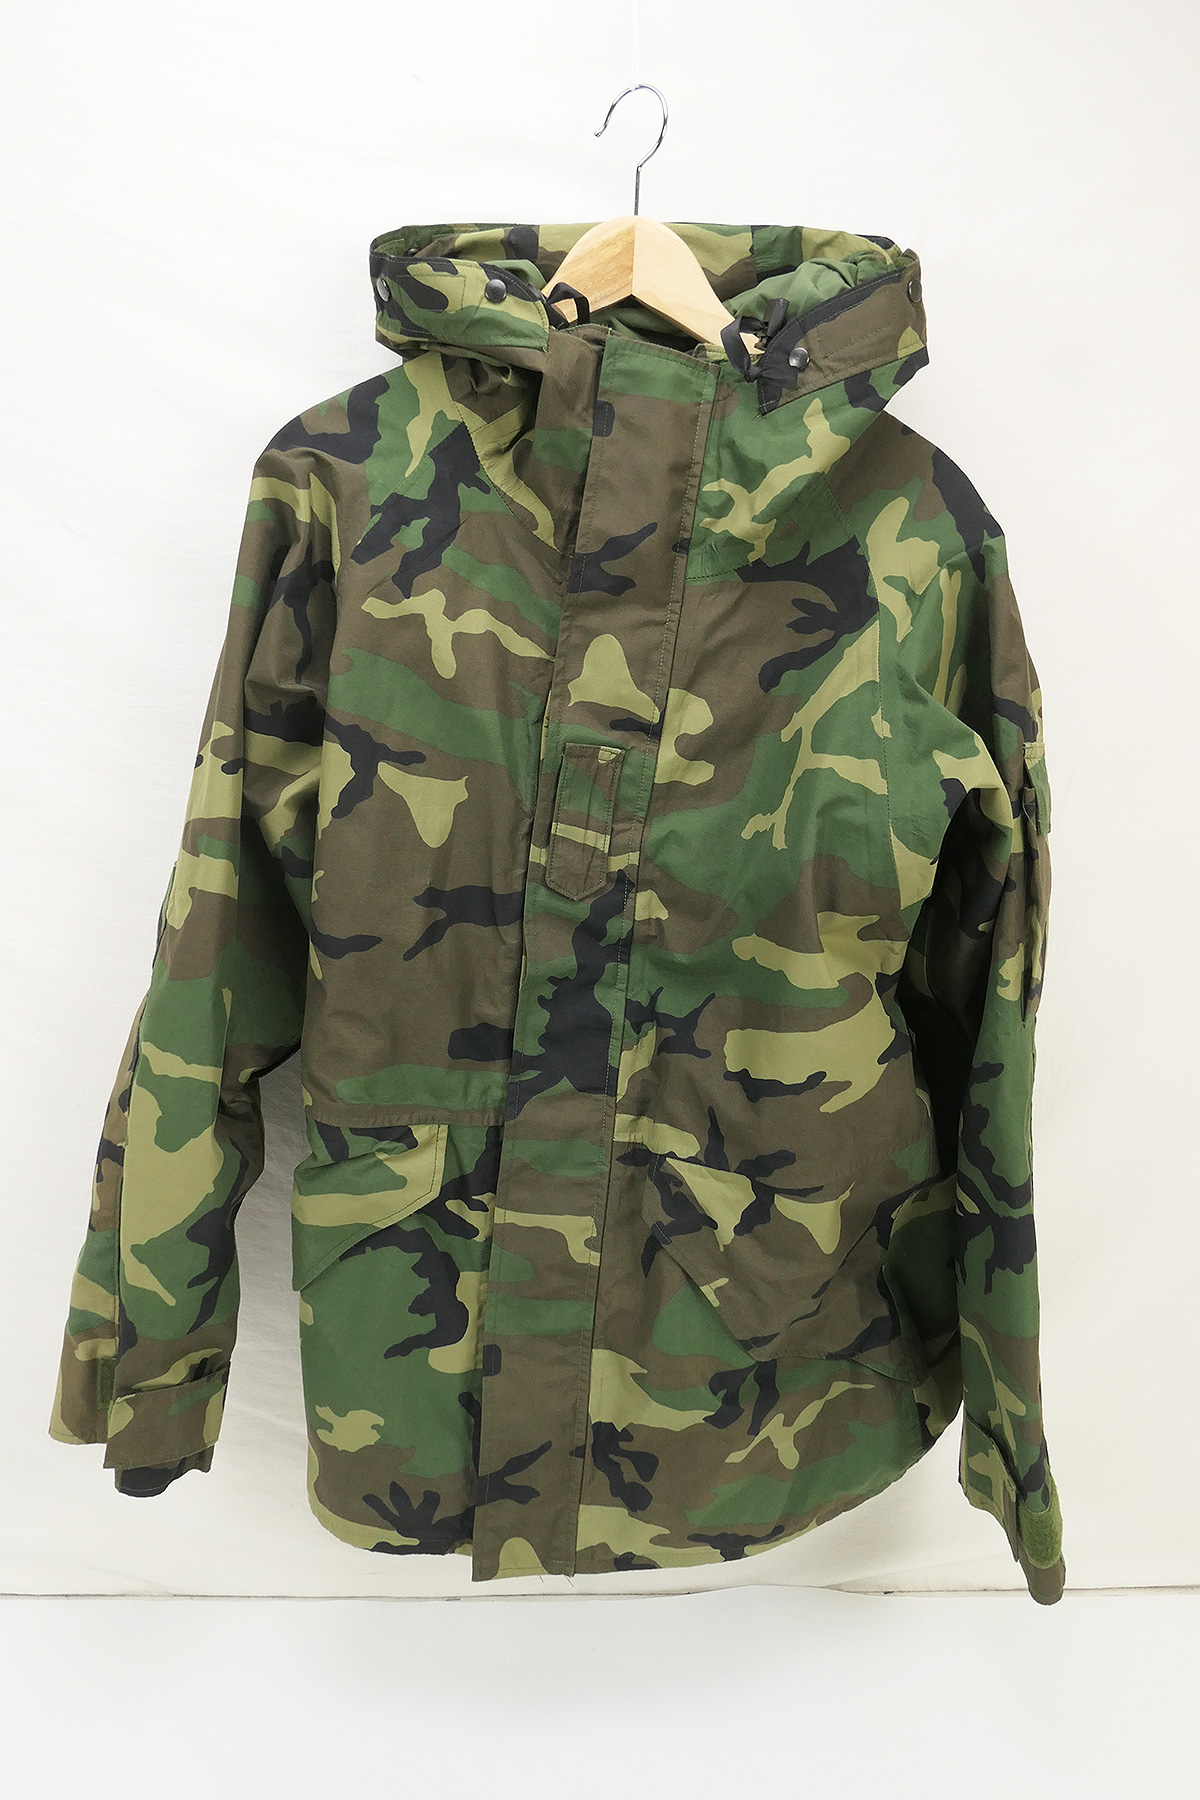 Military Parka Cold Weather Camouflage Jacket Medium Long Woodland